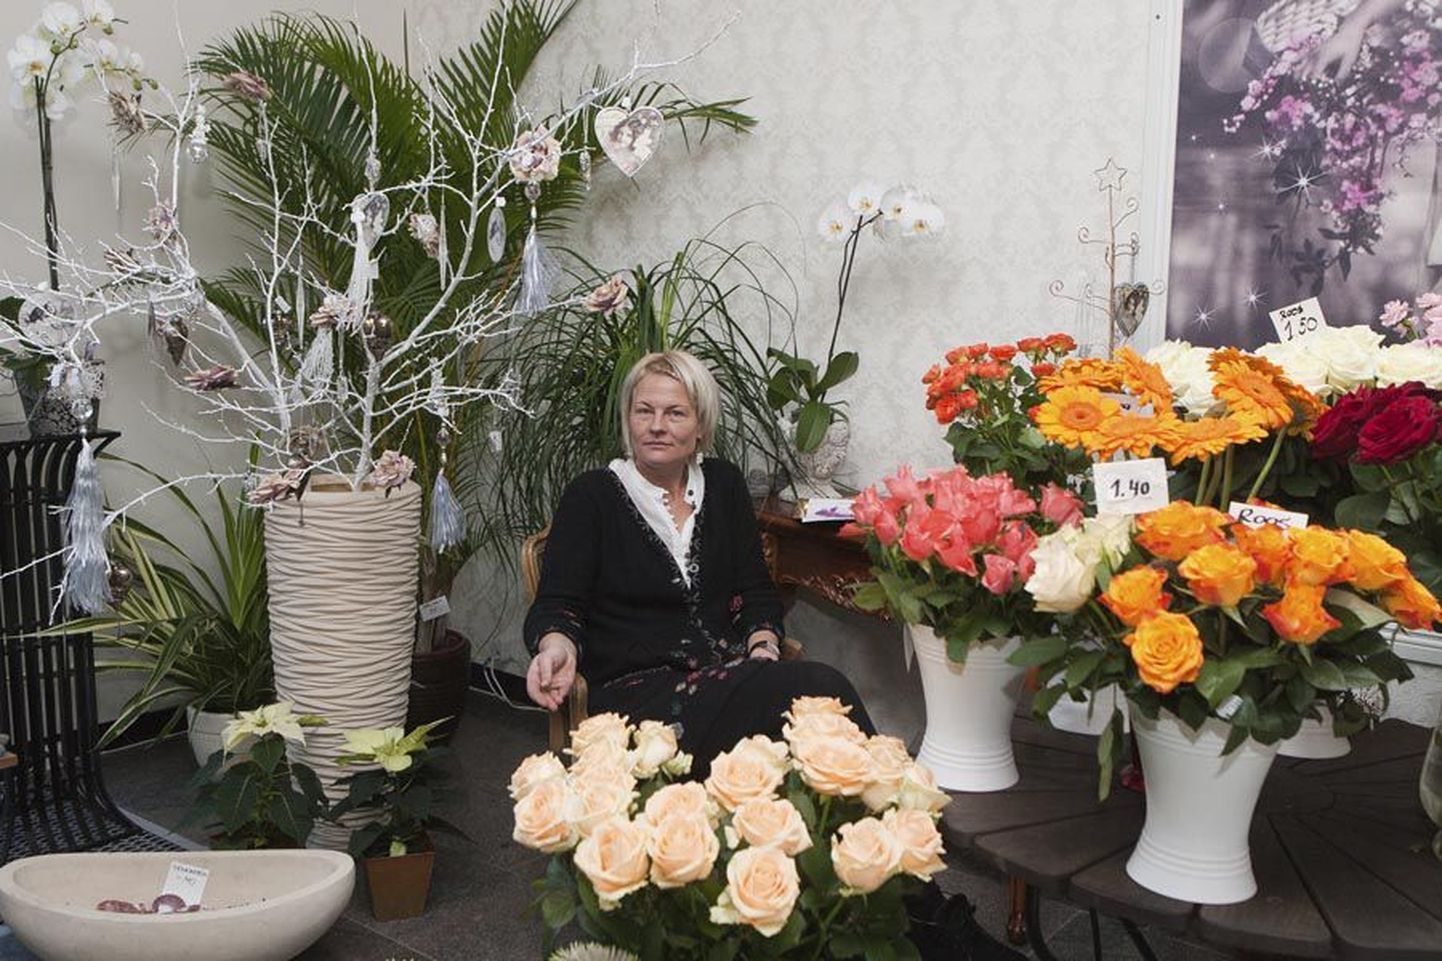 Müüja Ivi Ilvese meelest peab lillepood ajaga kaasas käima ning pakkuma klientidele kogu aeg uusi ideid ja tooteid.